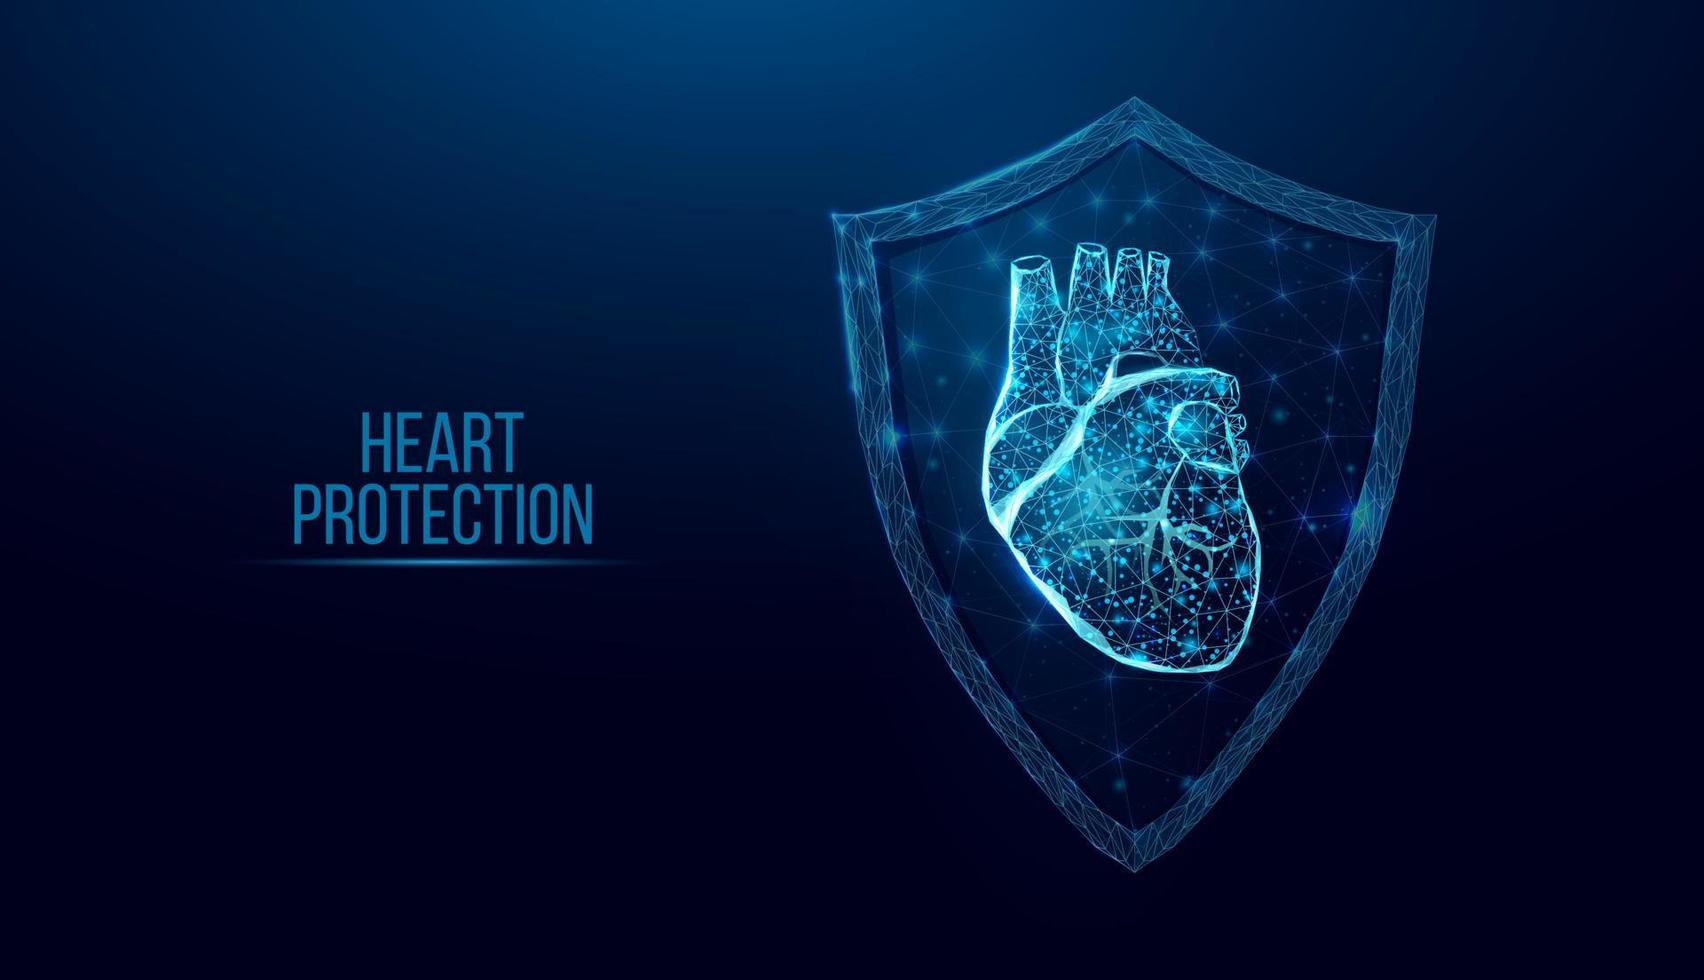 protezione del cuore umano. stile wireframe basso poli. concetto per la scienza medica, la malattia cardiologica. illustrazione vettoriale astratta moderna 3d su sfondo blu scuro.